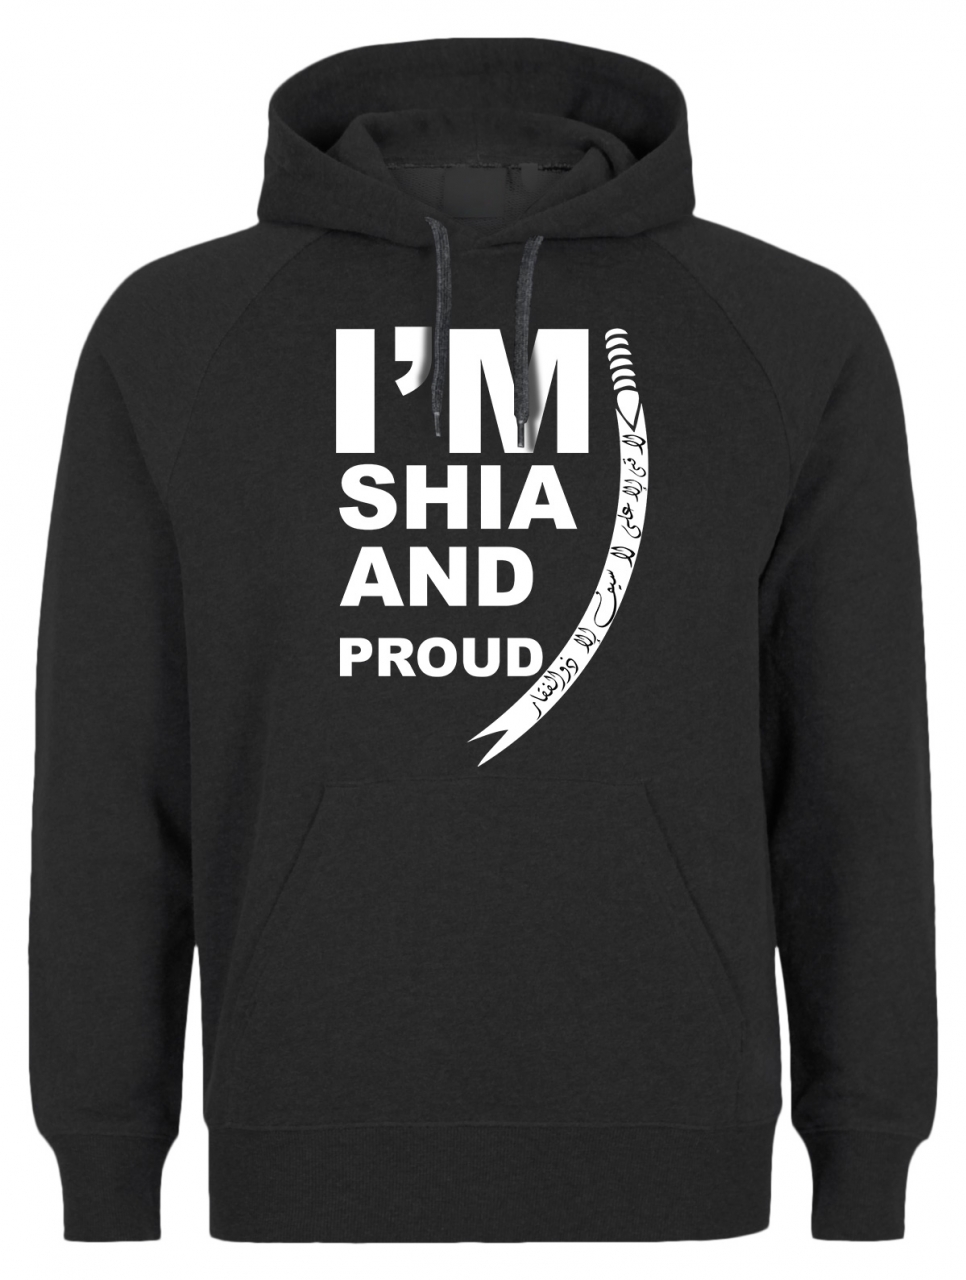 I am Shia and Proud Hoodie Shia Ashura Muharram Zulfiqar